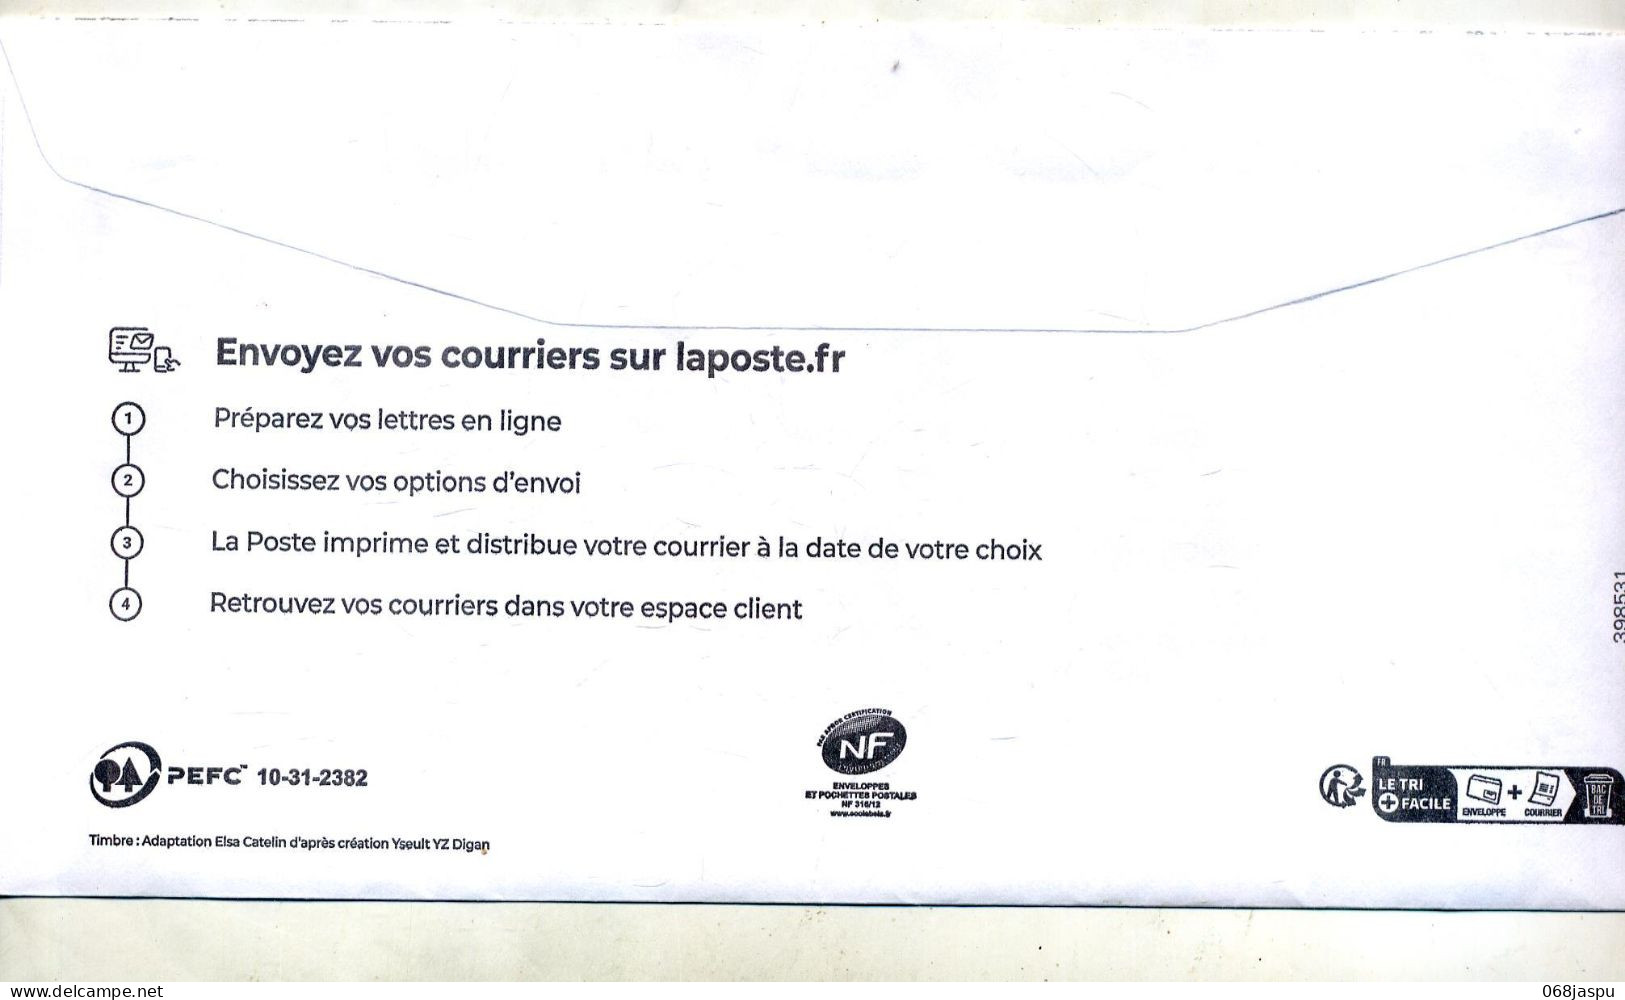 Entier  E-lettre Rouge  En Ligne Yseultyz - PAP:  Varia (1995-...)